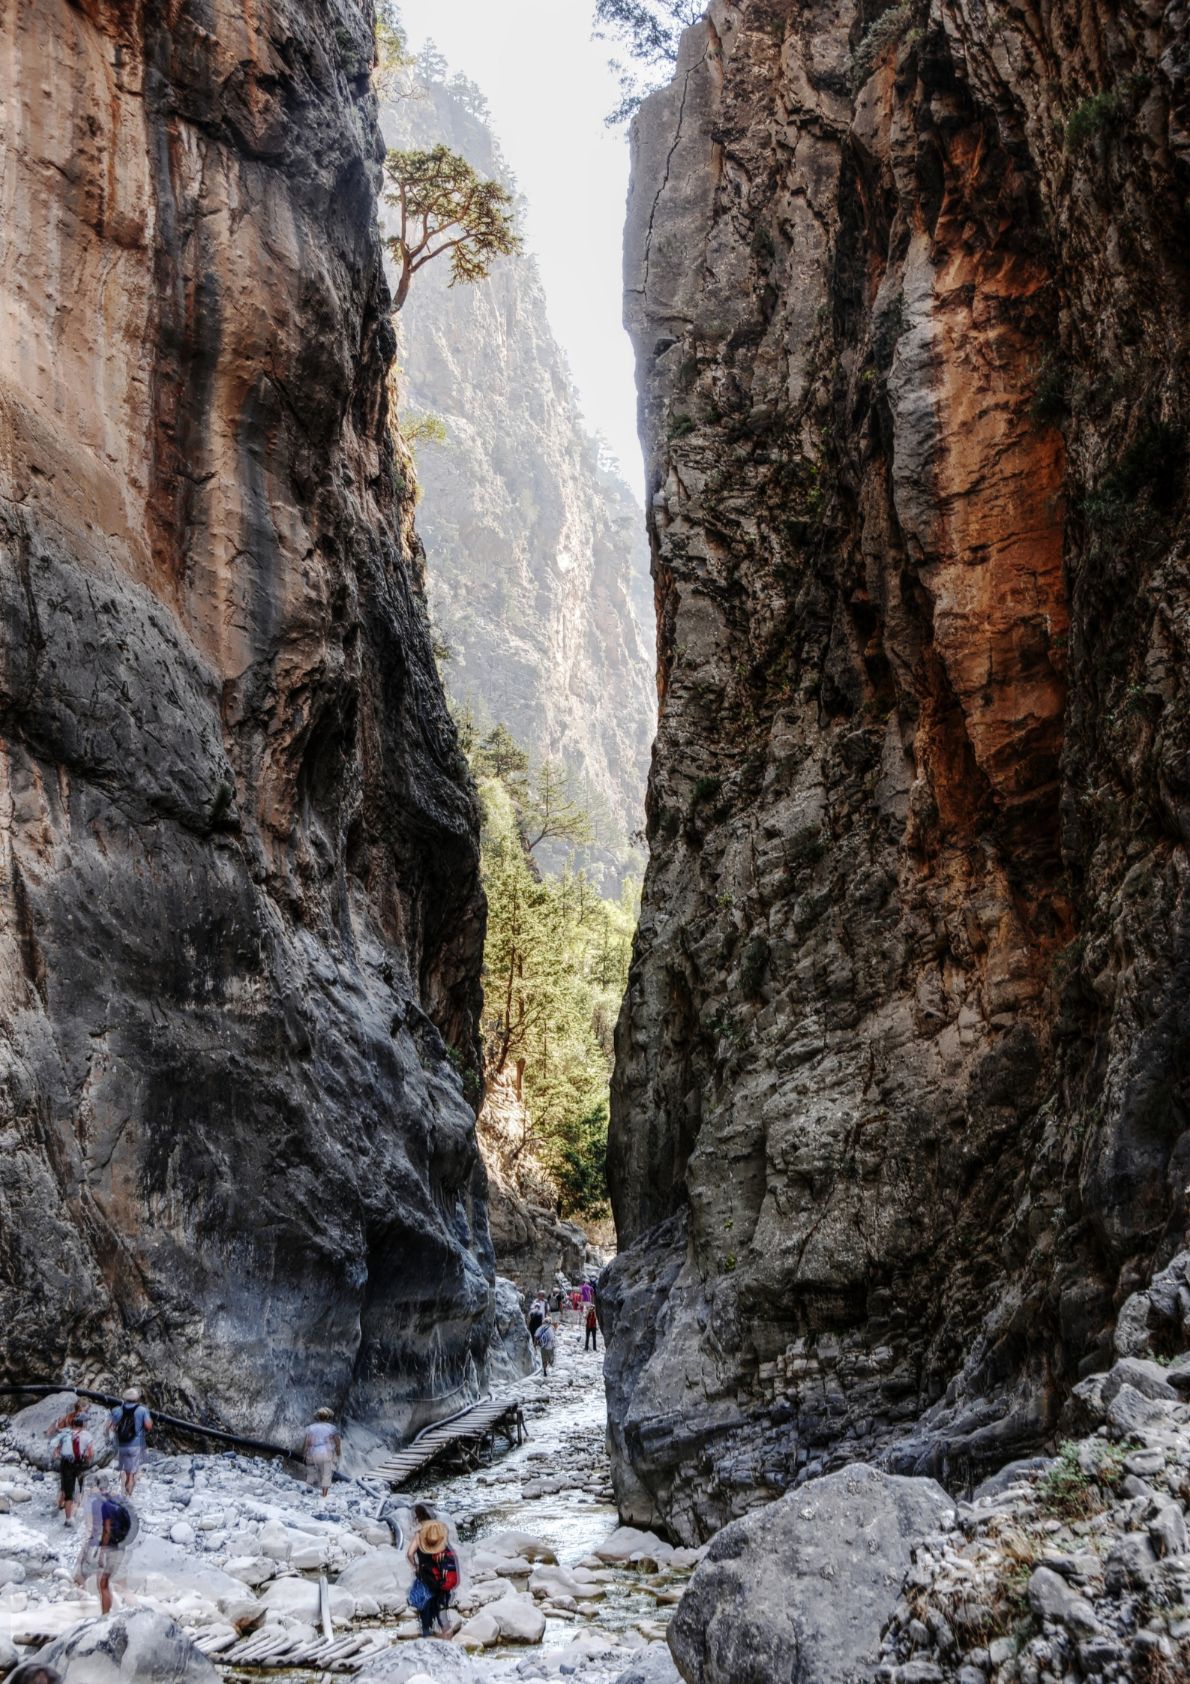 Iron Gates of Samaria Gorge